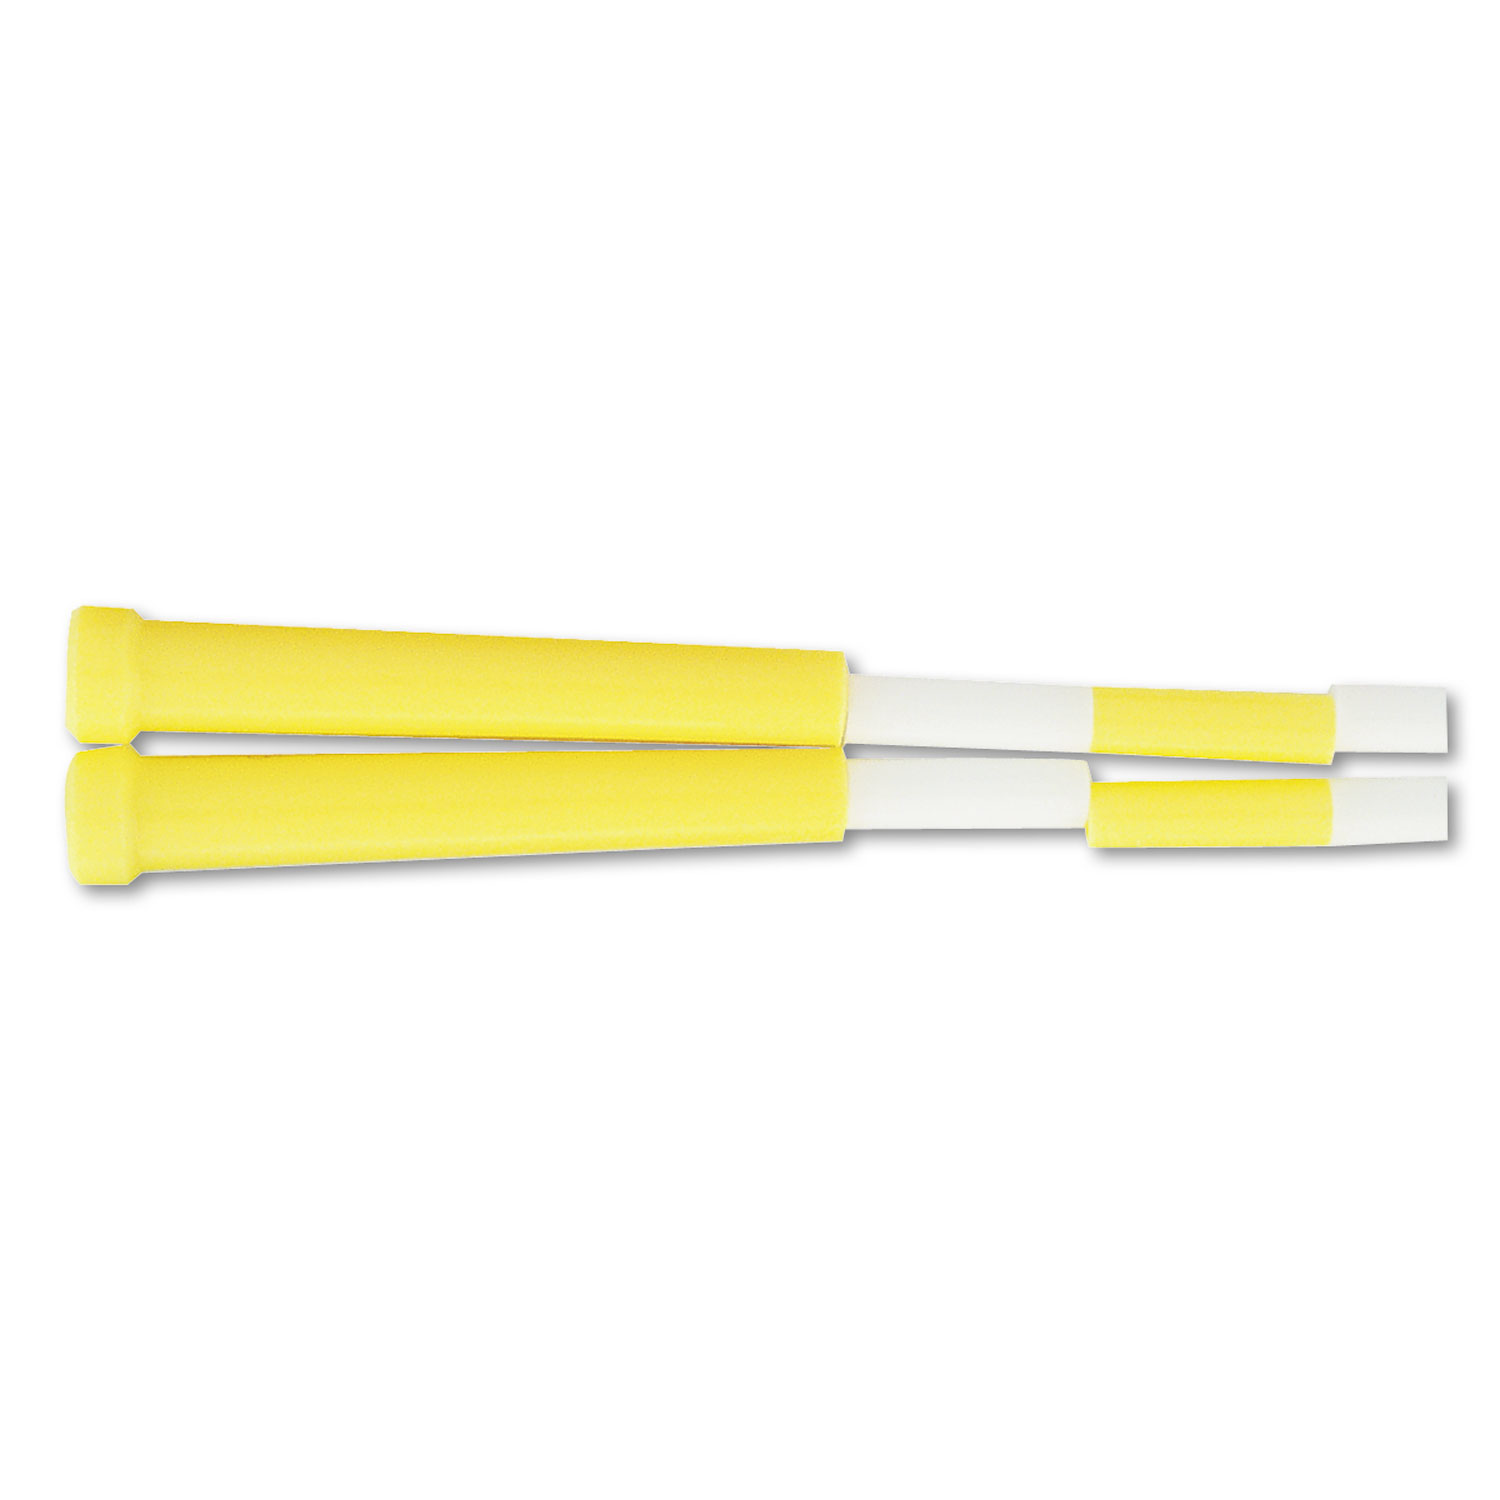 Segmented Plastic Jump Rope, 8ft, Yellow/White